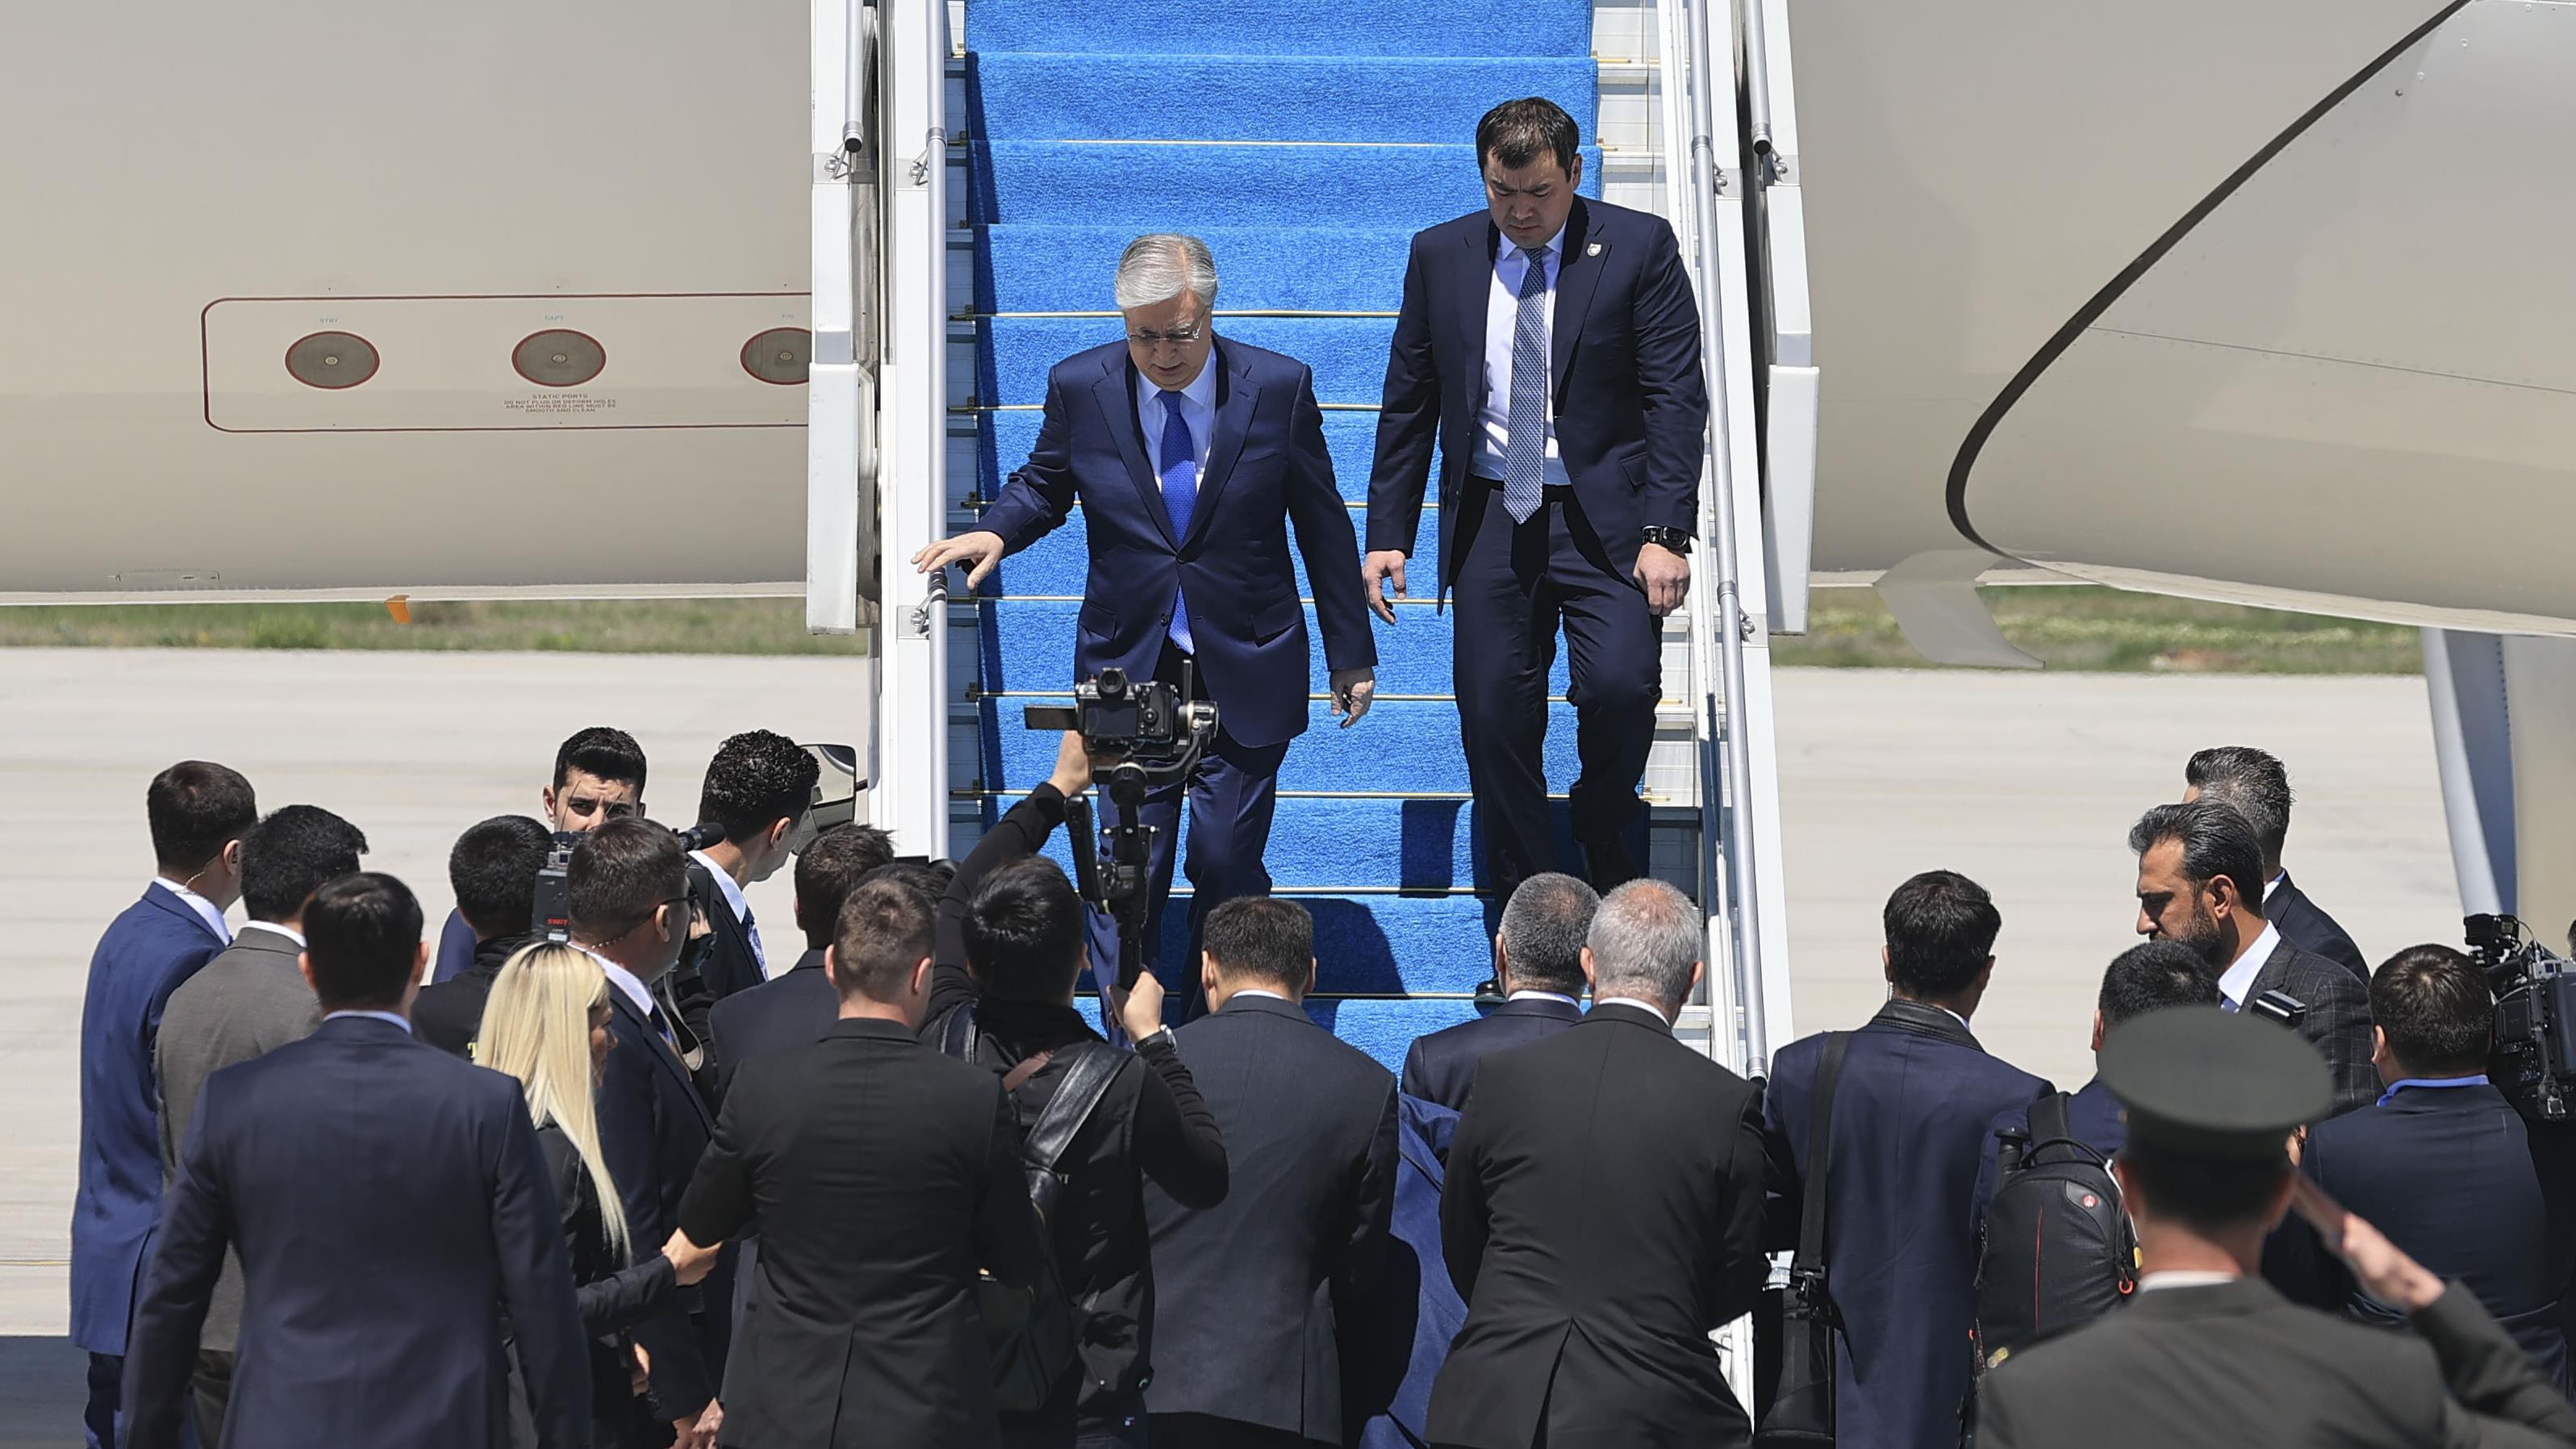 رئیس جمهور قزاقستان وارد آنکارا شد ​​​​​​​